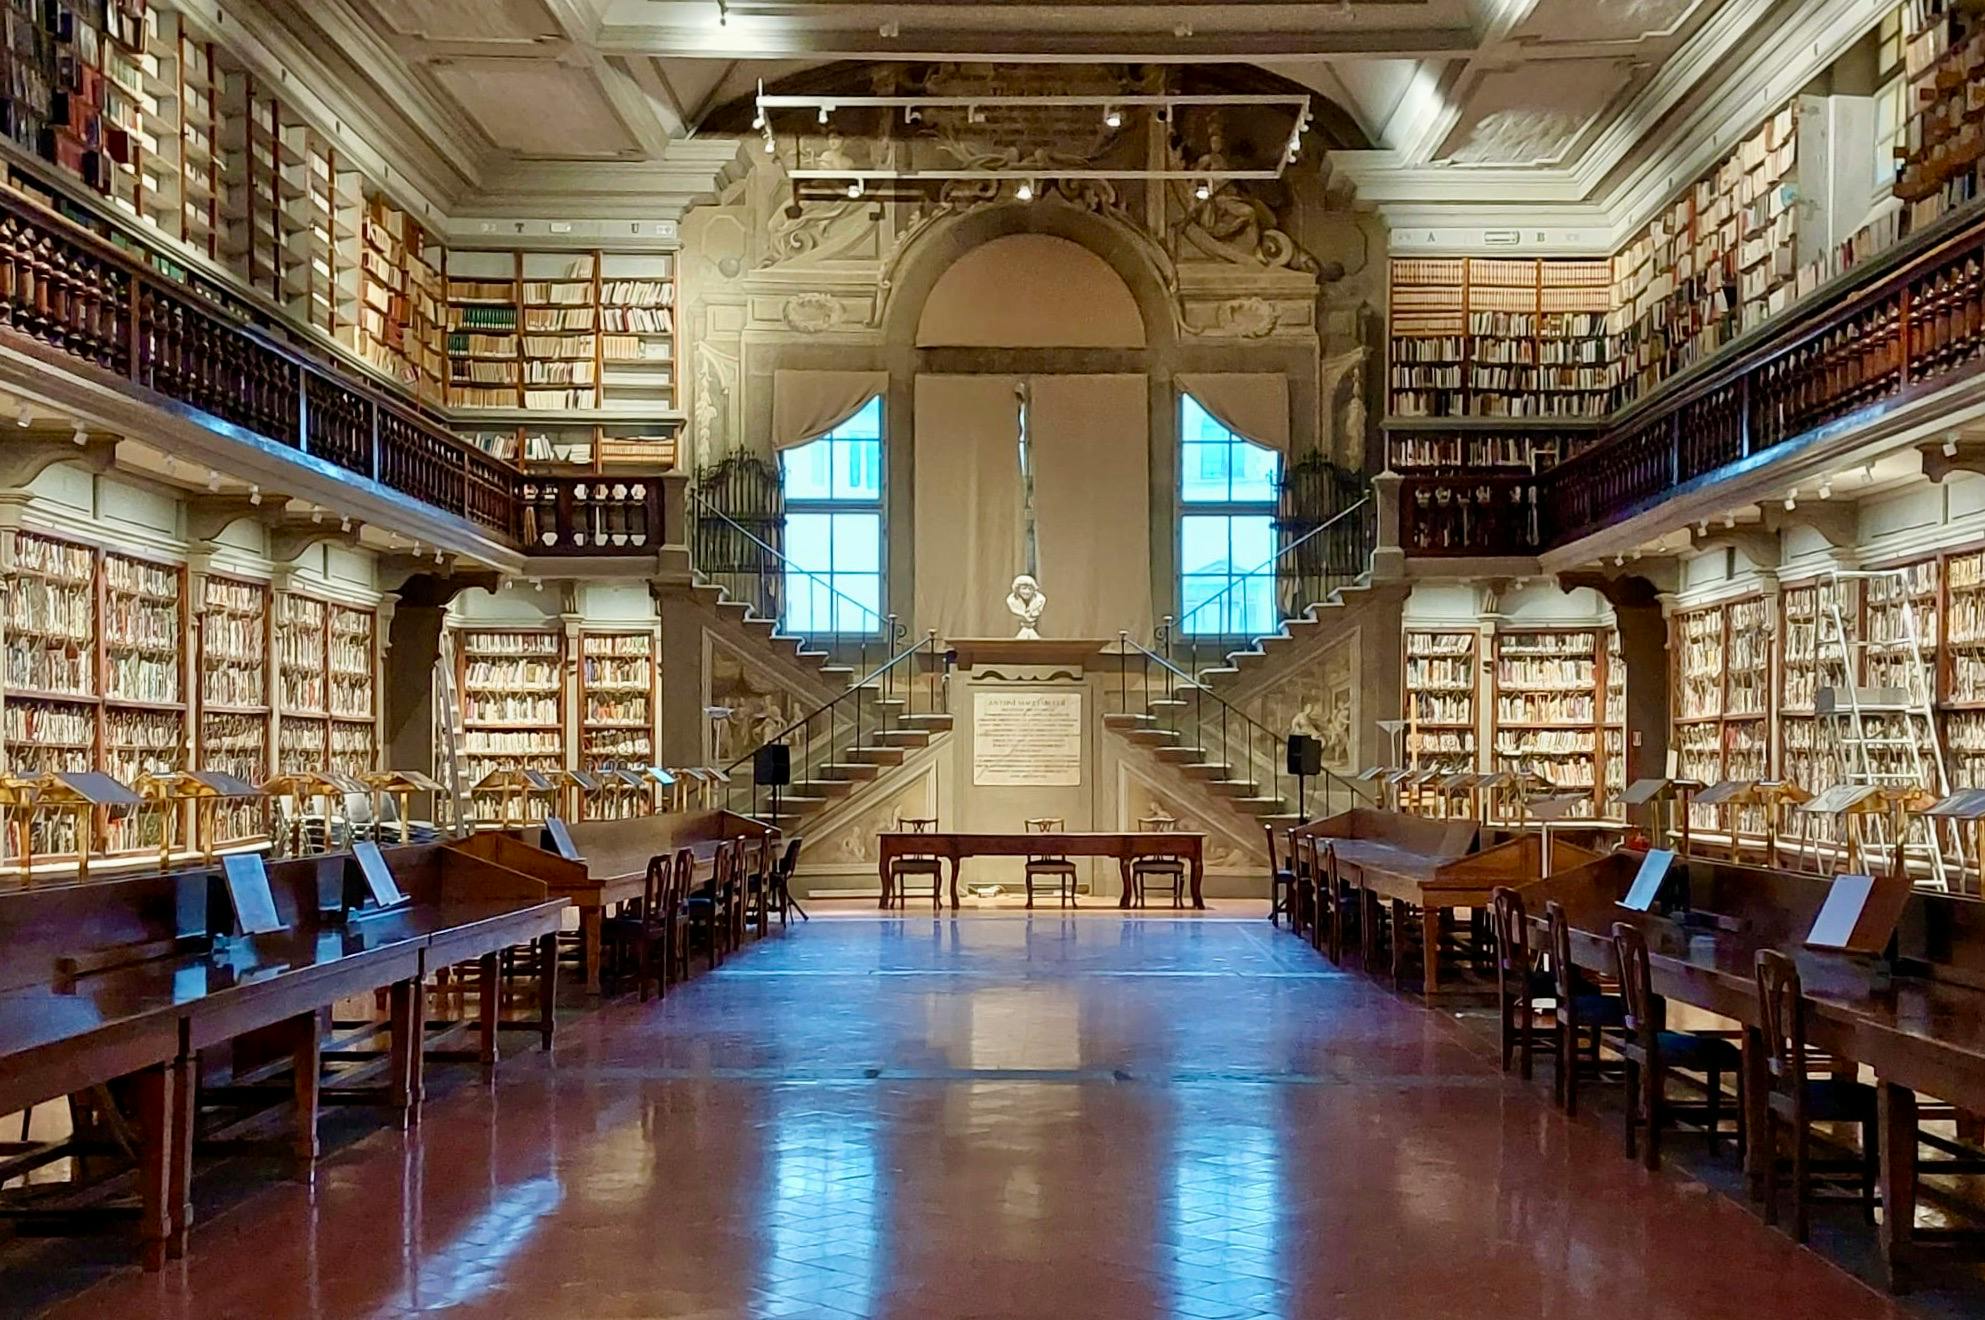 The Uffizi Library